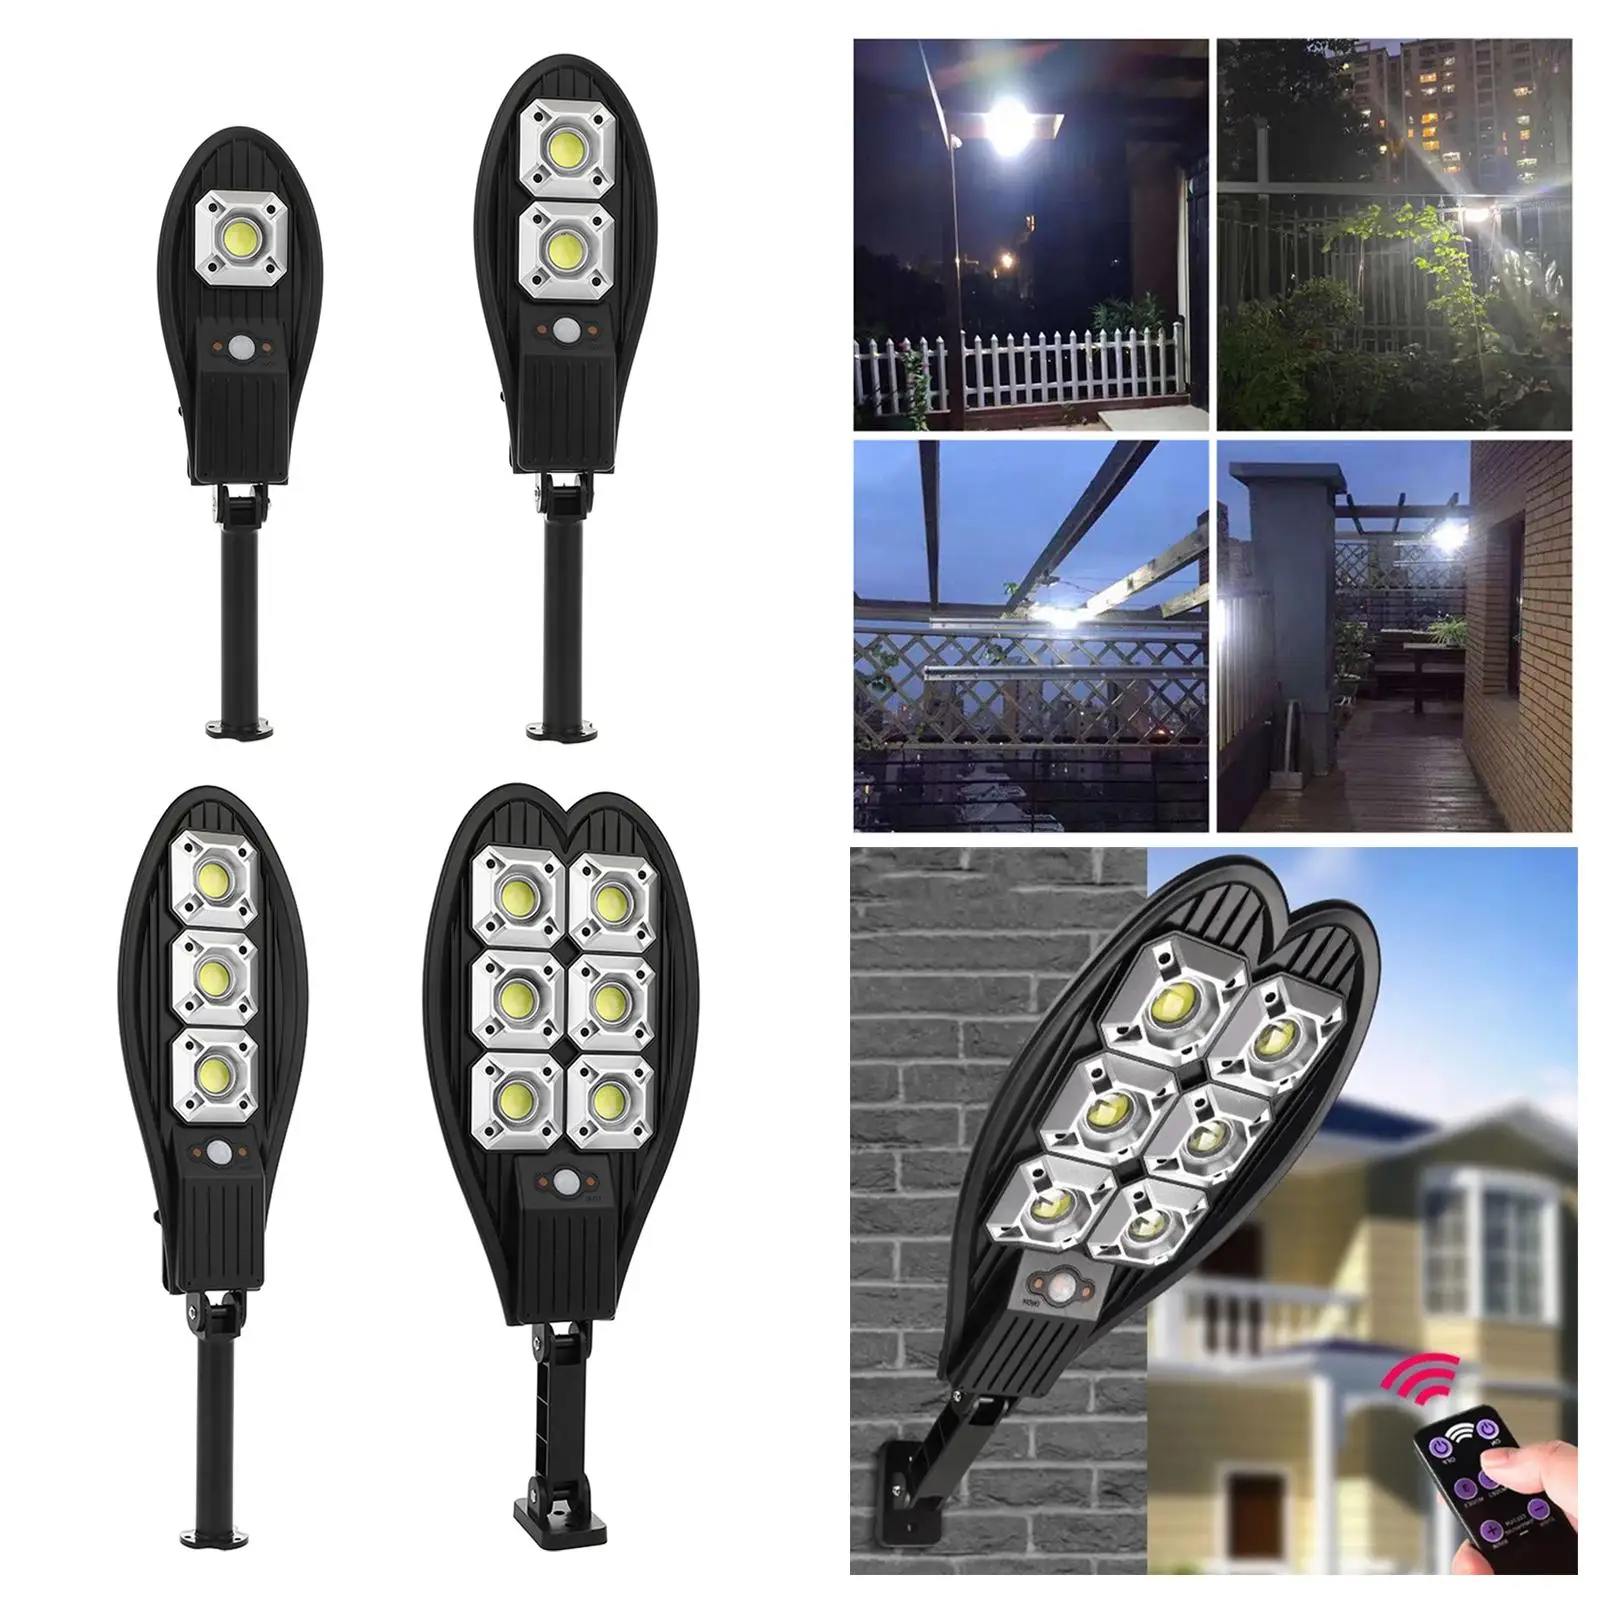 Outdoor Solar Street Light Motion Sensor LED Security Light for Outside Yard